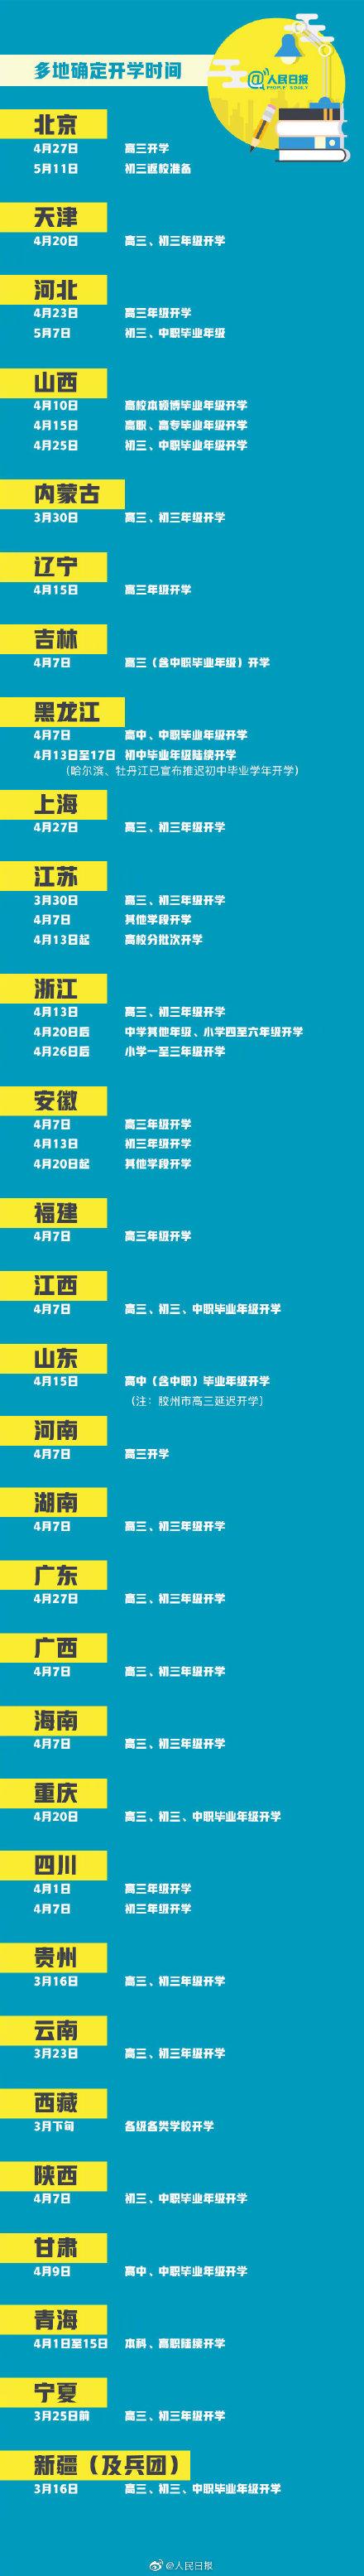 2020年开学最新消息 江苏中考时间安排确定 各省市明确开学时间 重庆中考延期一个月举行